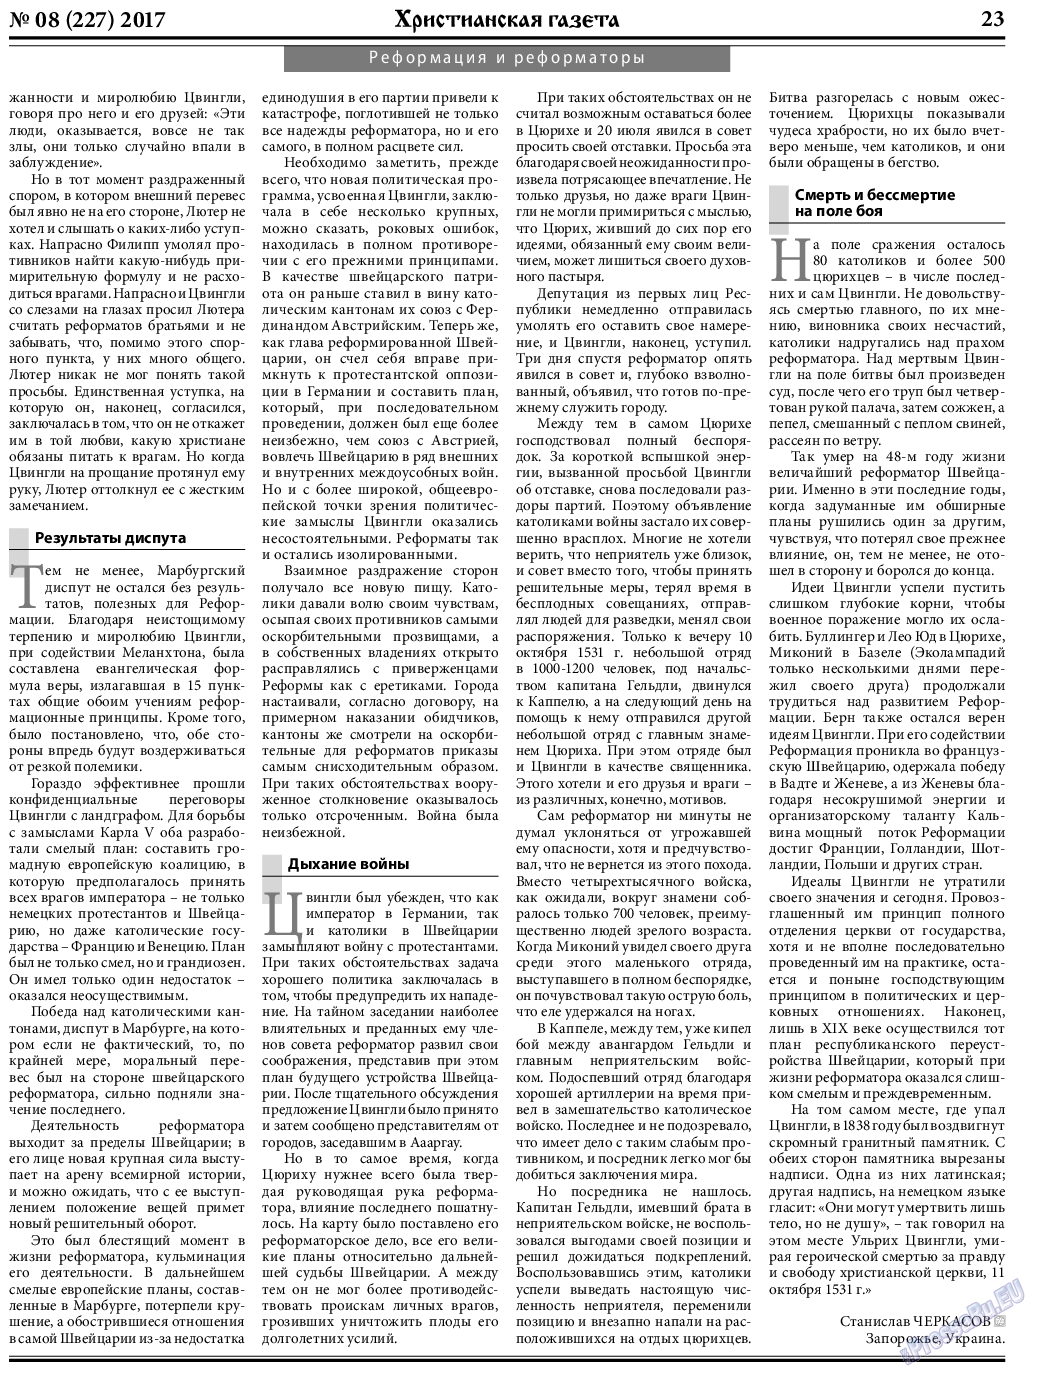 Христианская газета, газета. 2017 №8 стр.23